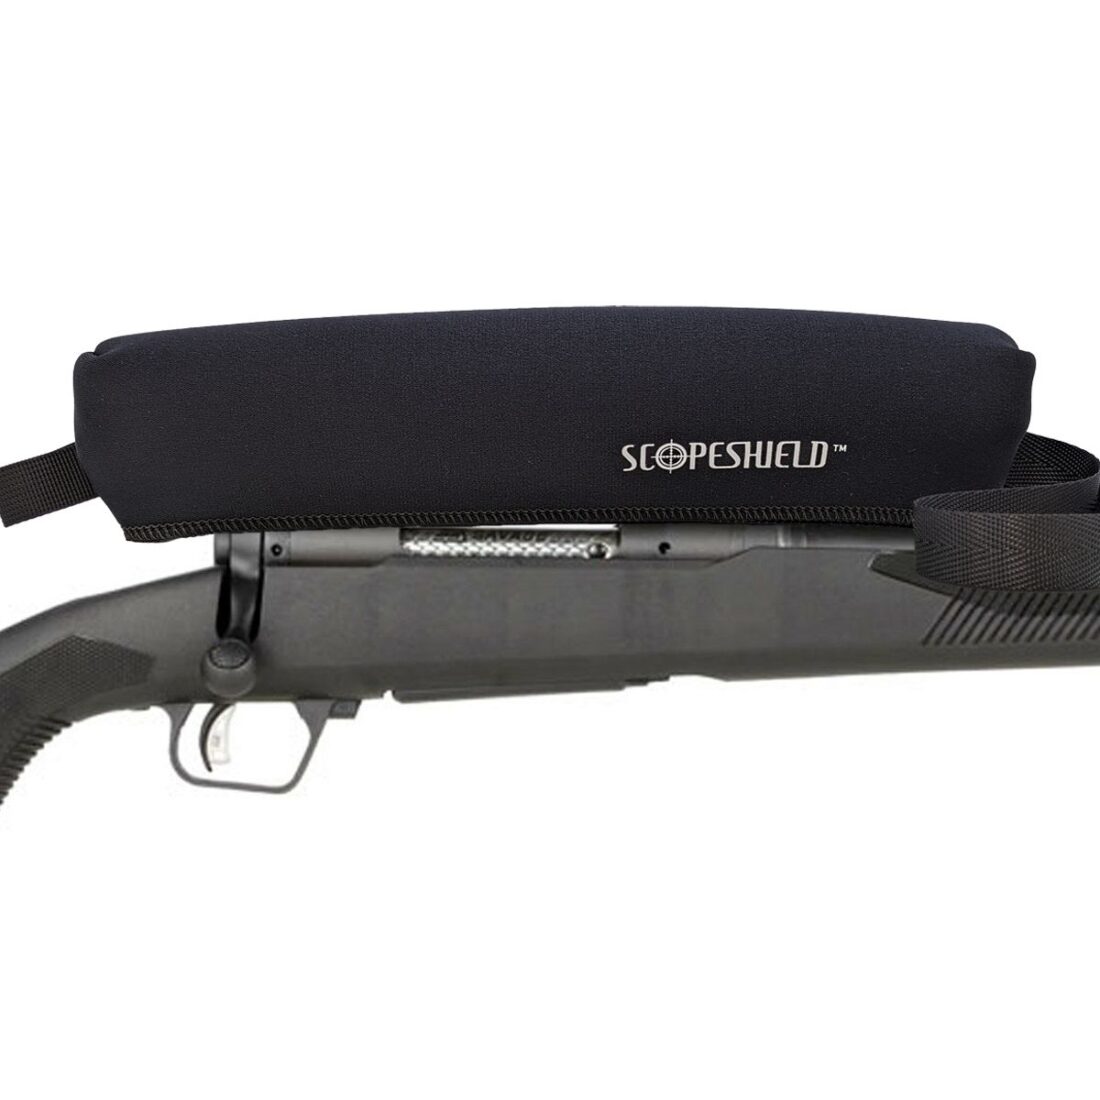 ScopeShield protecting scope mounted rifle